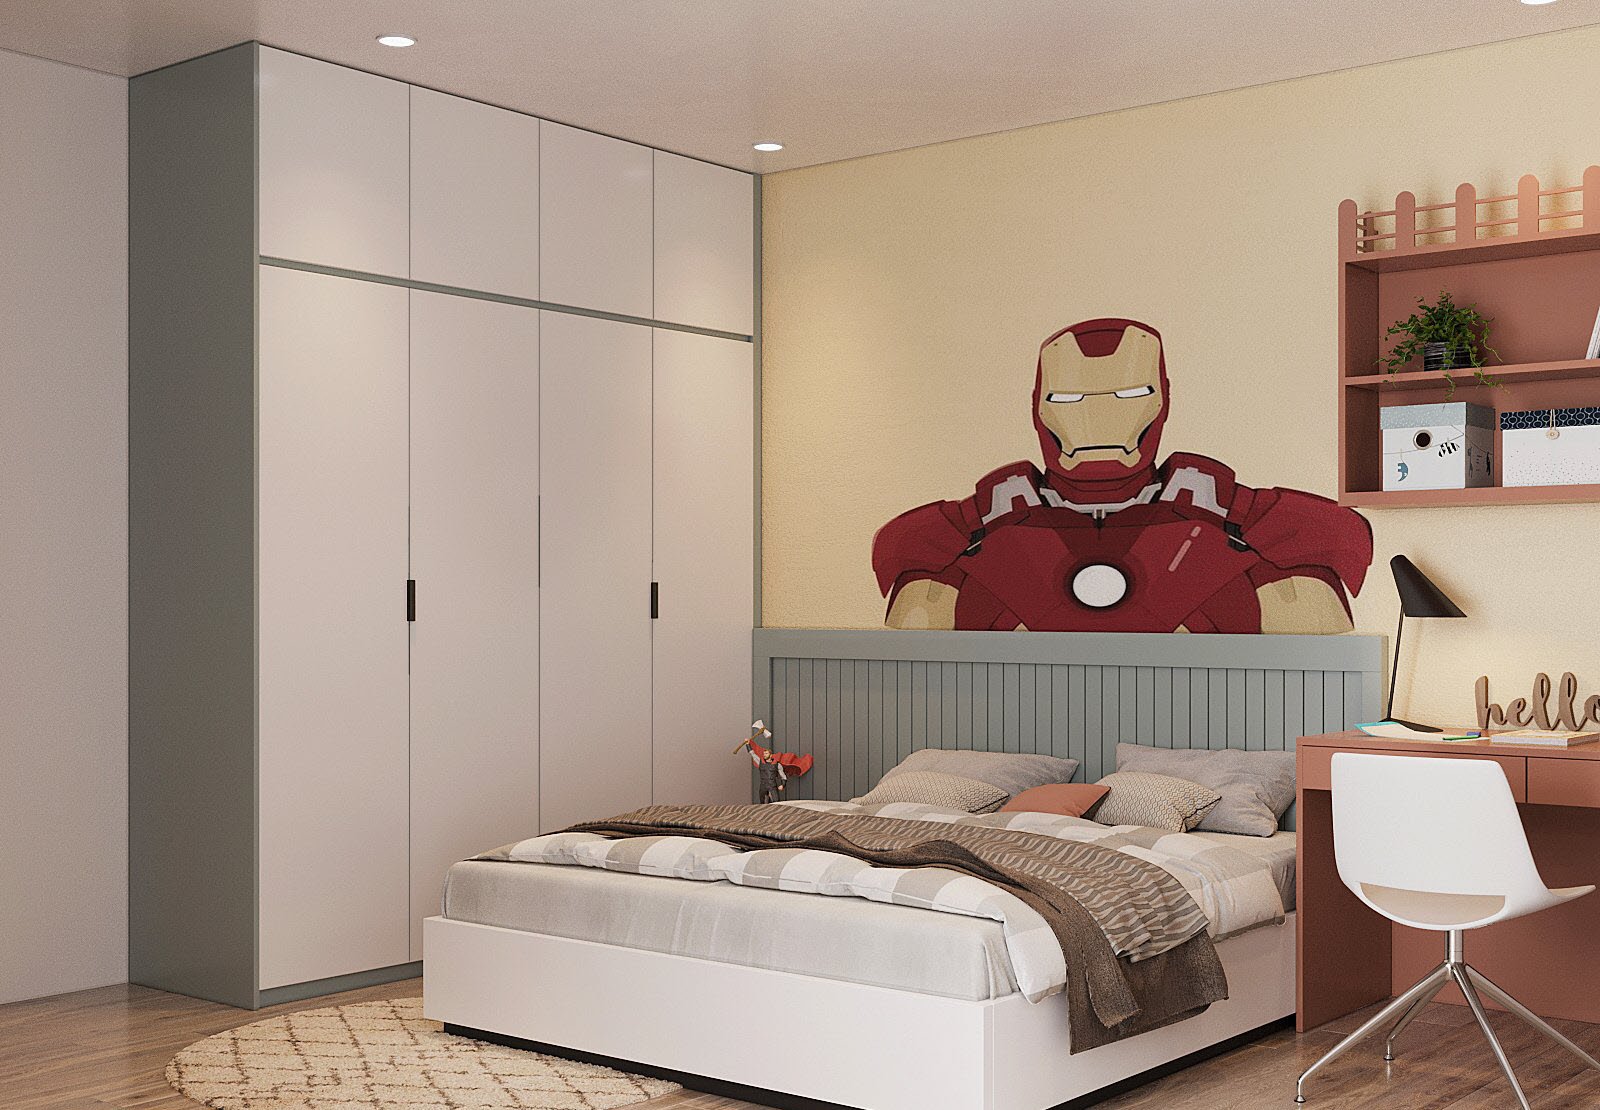 hình ảnh phòng ngủ của trẻ với tủ quần áo màu trắng cao kịch trần, tường đầu giường vẽ hình siêu nhân màu đỏ